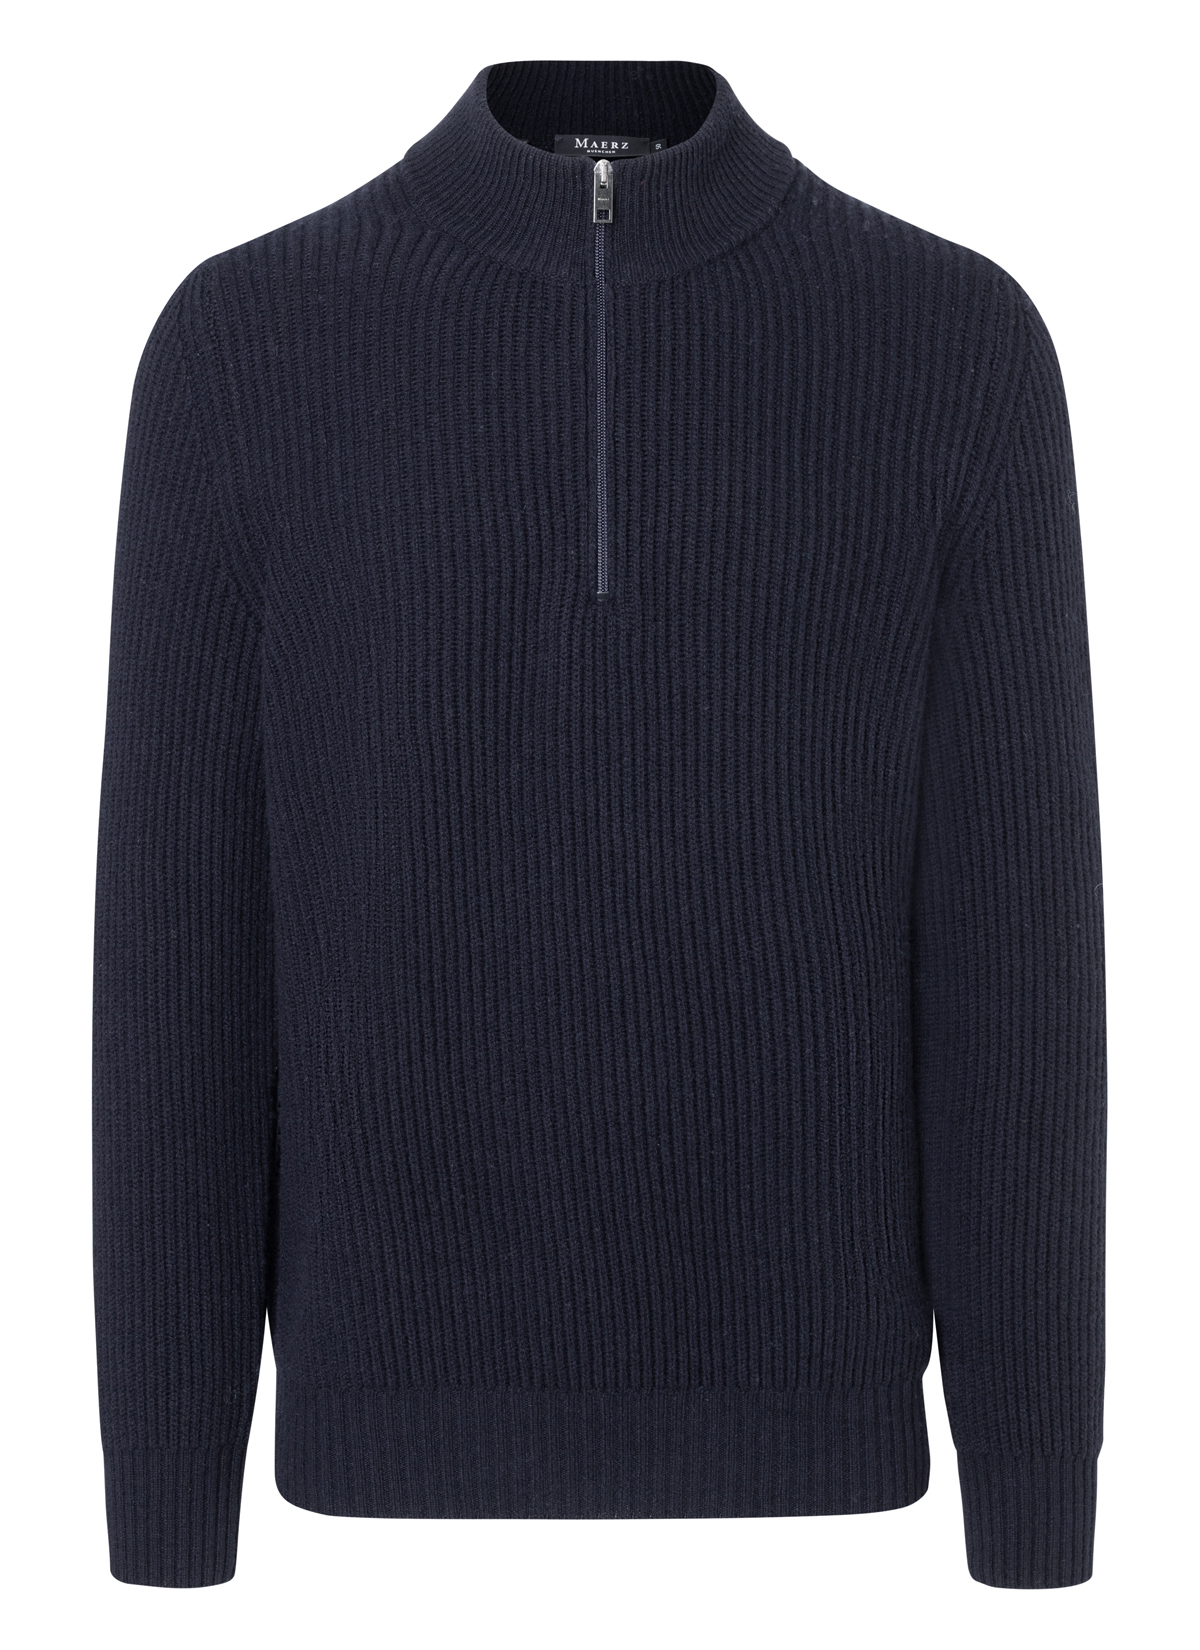 Пуловер März Troyer, темно синий